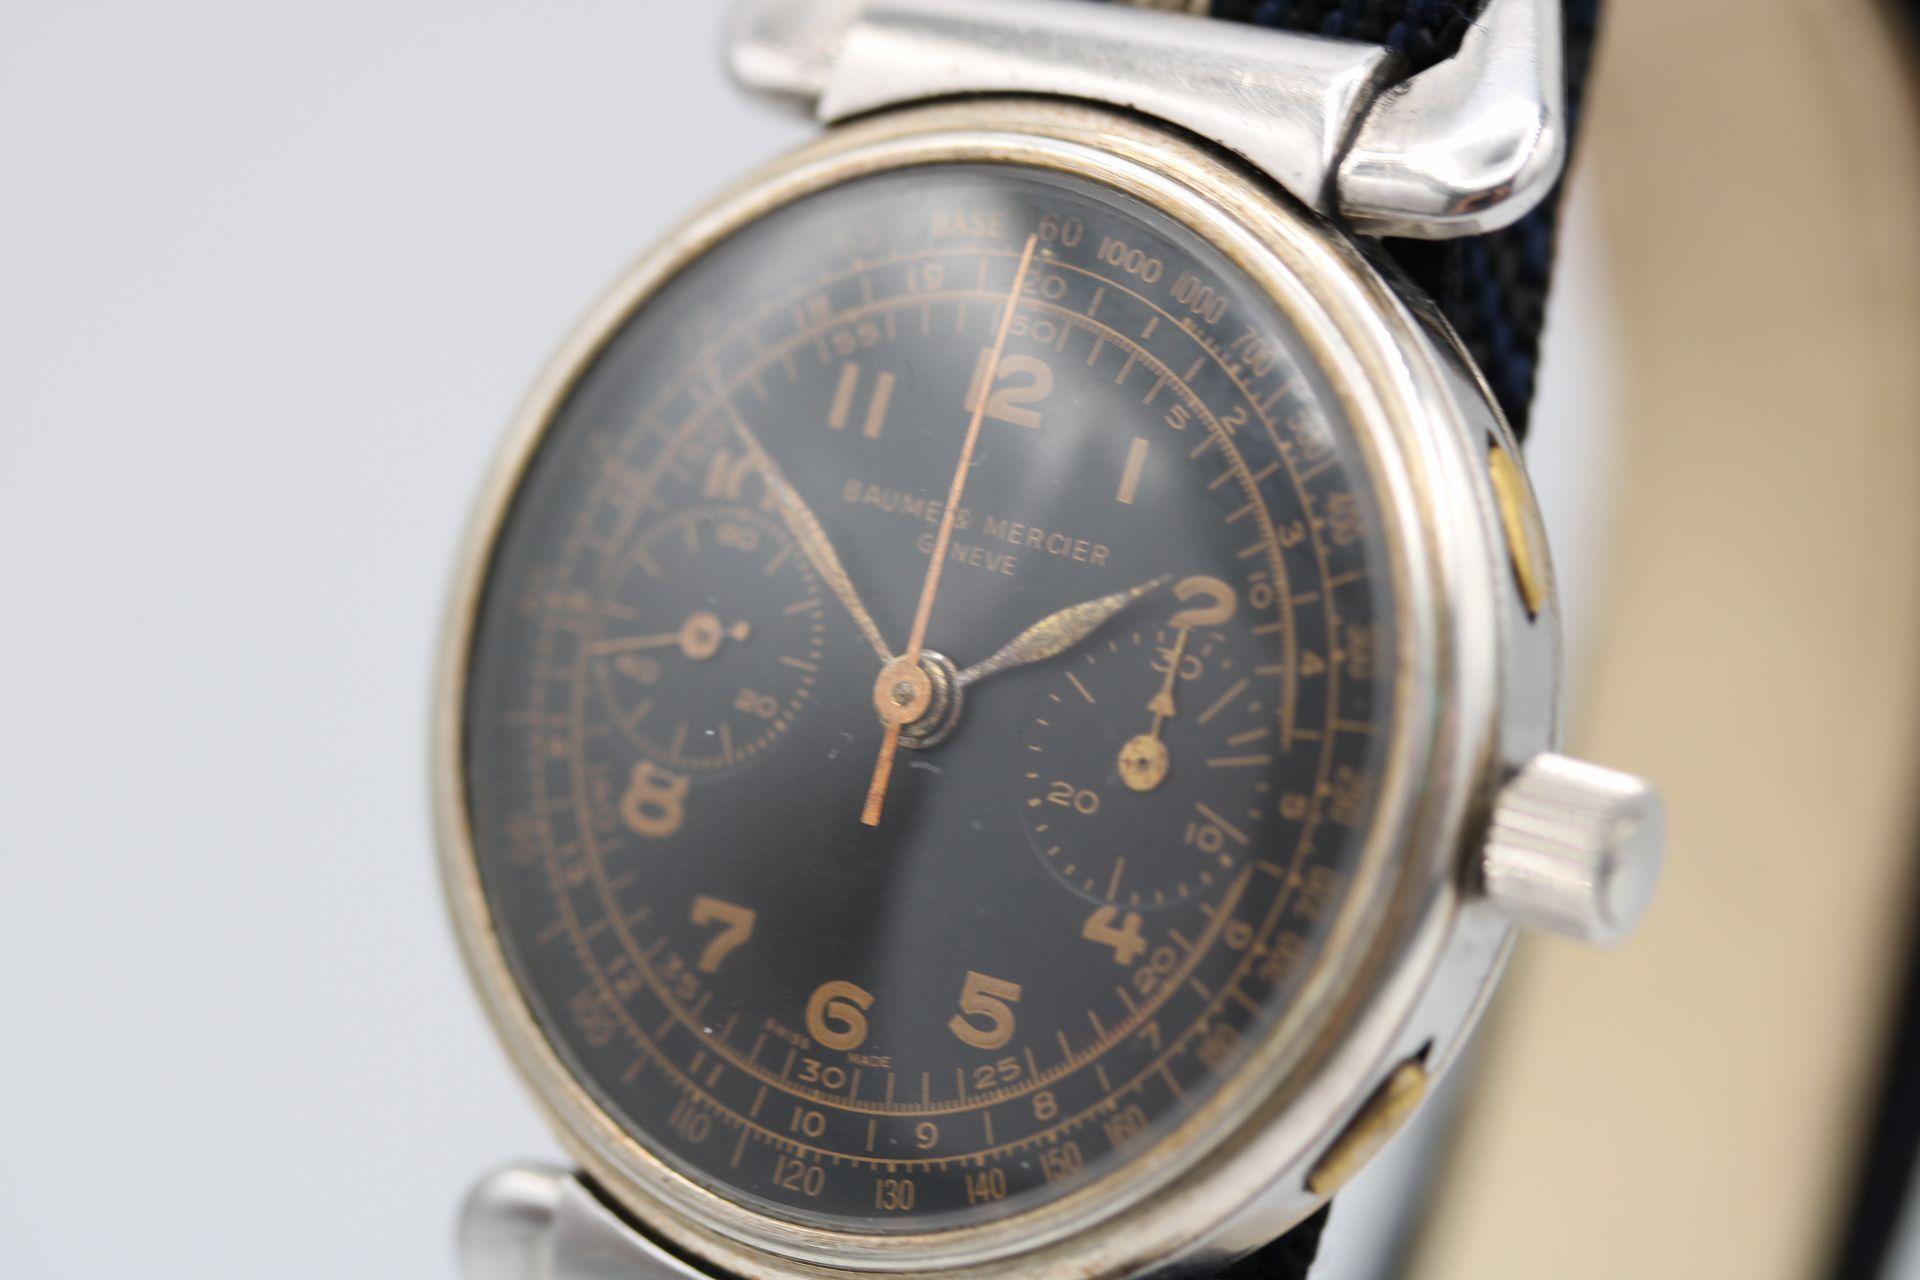 Uhr: Baume und Mercier Bull Horn Chronograph
Lager-Nummer: CHW5041
Preis: £1600.00

Ein wirklich bemerkenswerter Chronograph aus den frühen 1930er Jahren, der sich in einem phänomenalen Zustand befindet und für eine fast 100 Jahre alte Uhr